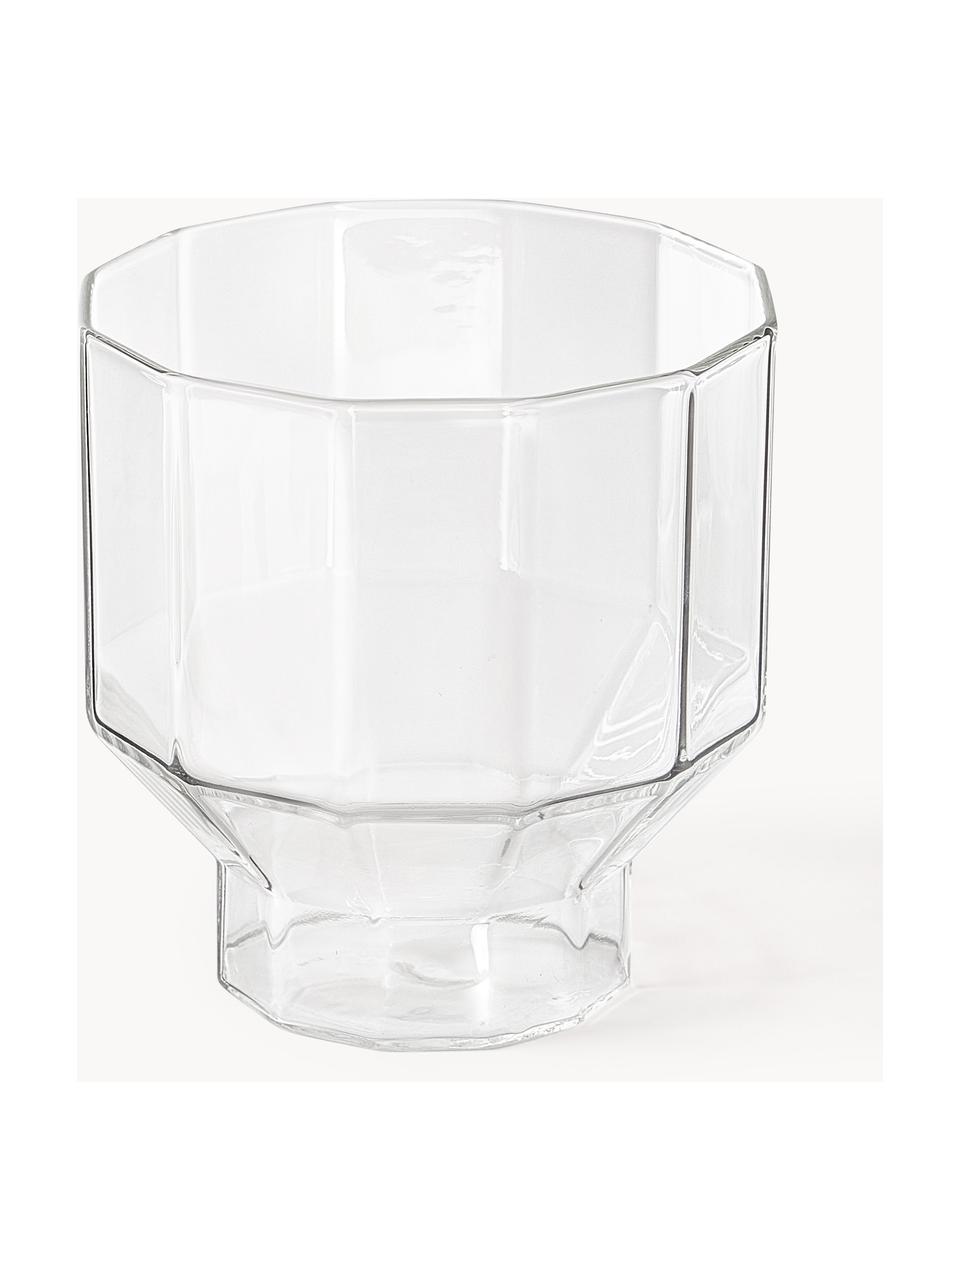 Mundgeblasene Wasserkaraffe mit Gläsern Angoli, 5er-Set, Borosillkatglas, Transparent, Set mit verschiedenen Größen